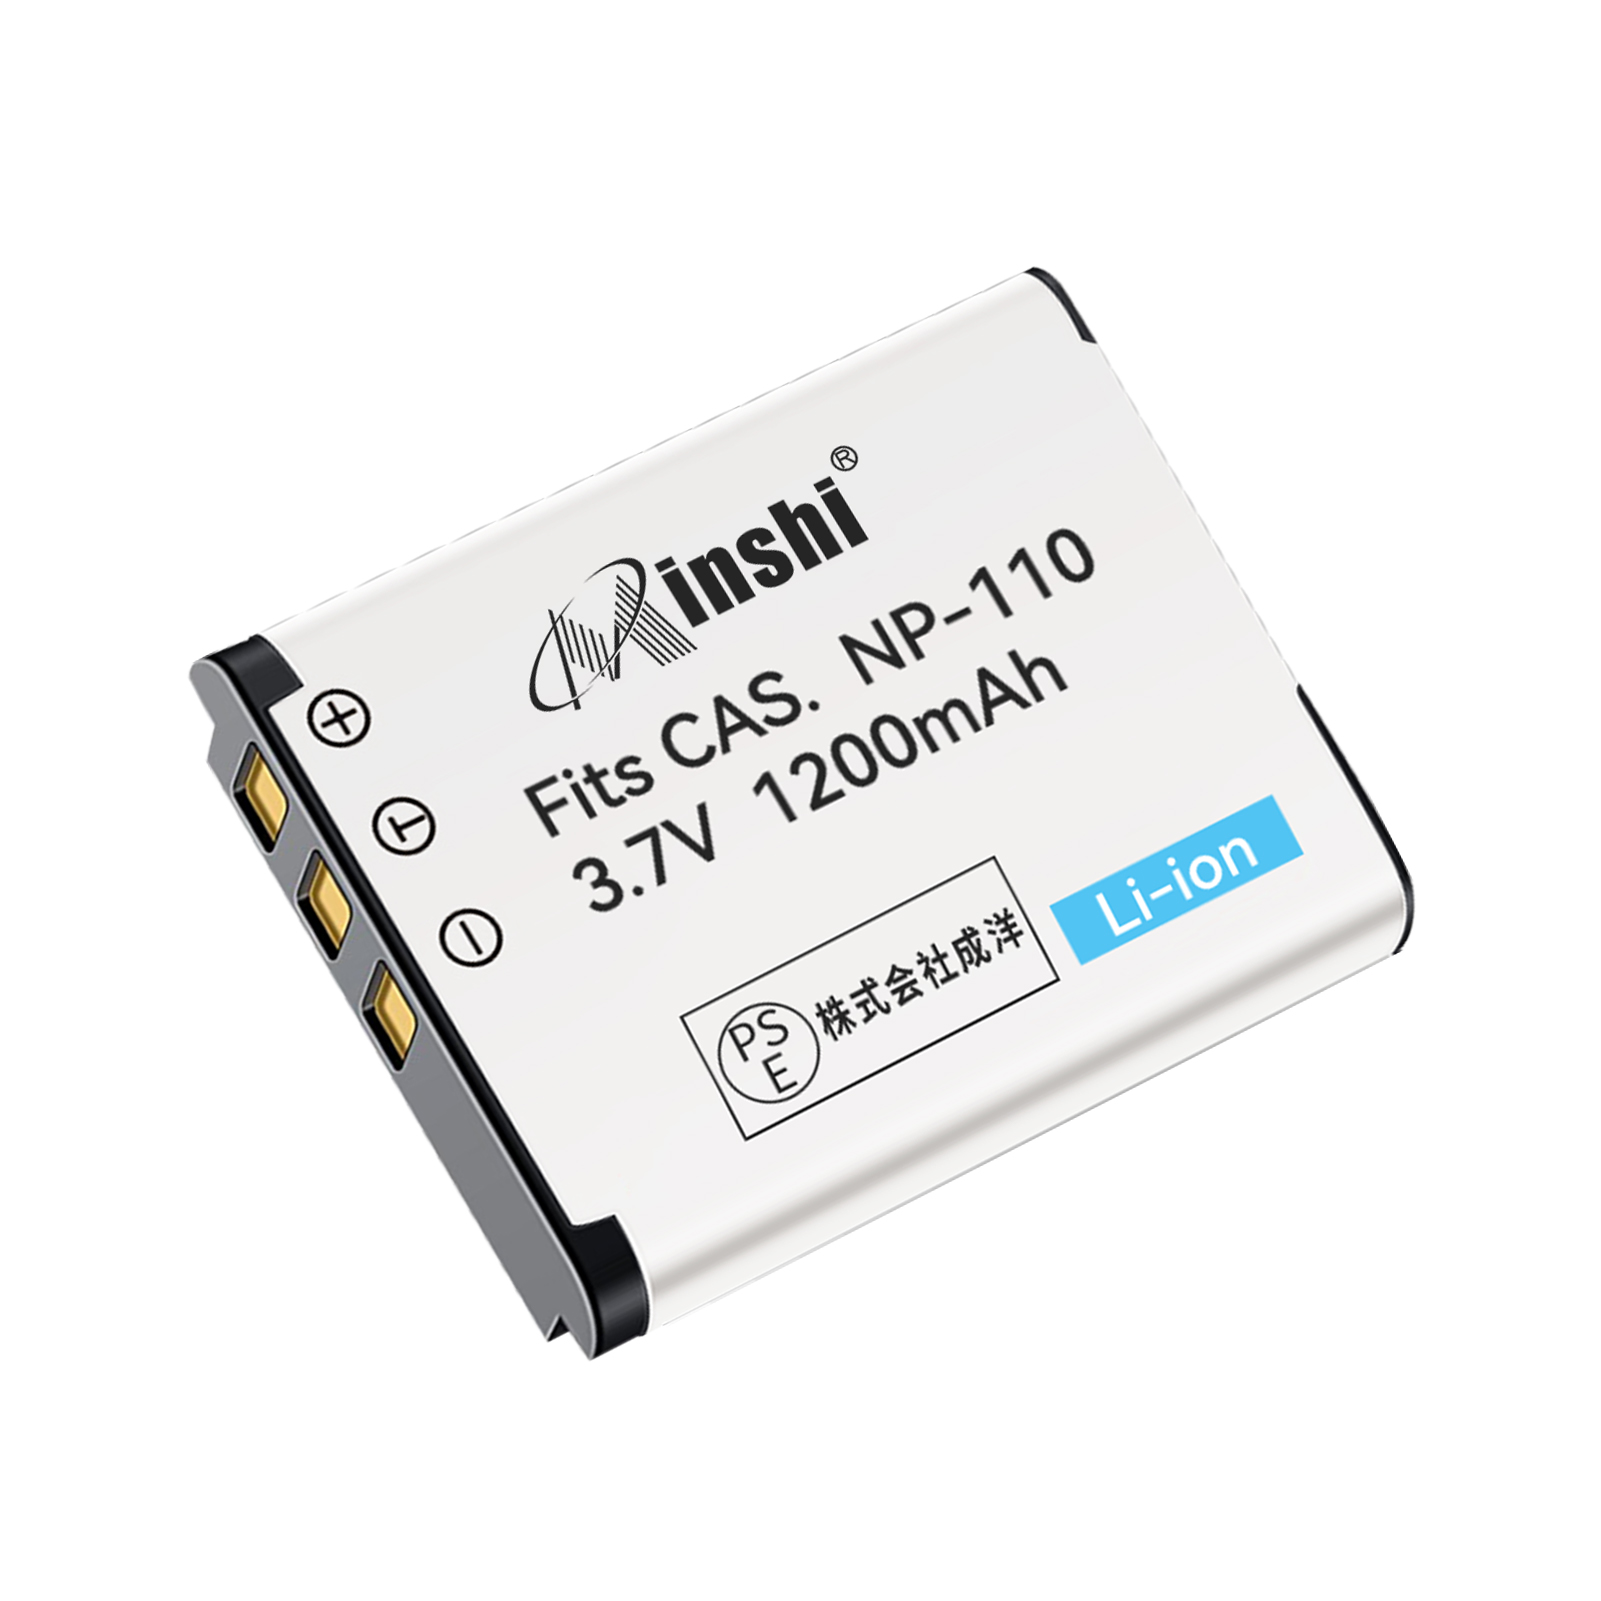 【1年保証】minshi CASIO NP-160 BN-VG212U【1200mAh 3.7V】PSE認定済 高品質交換用バッテリー